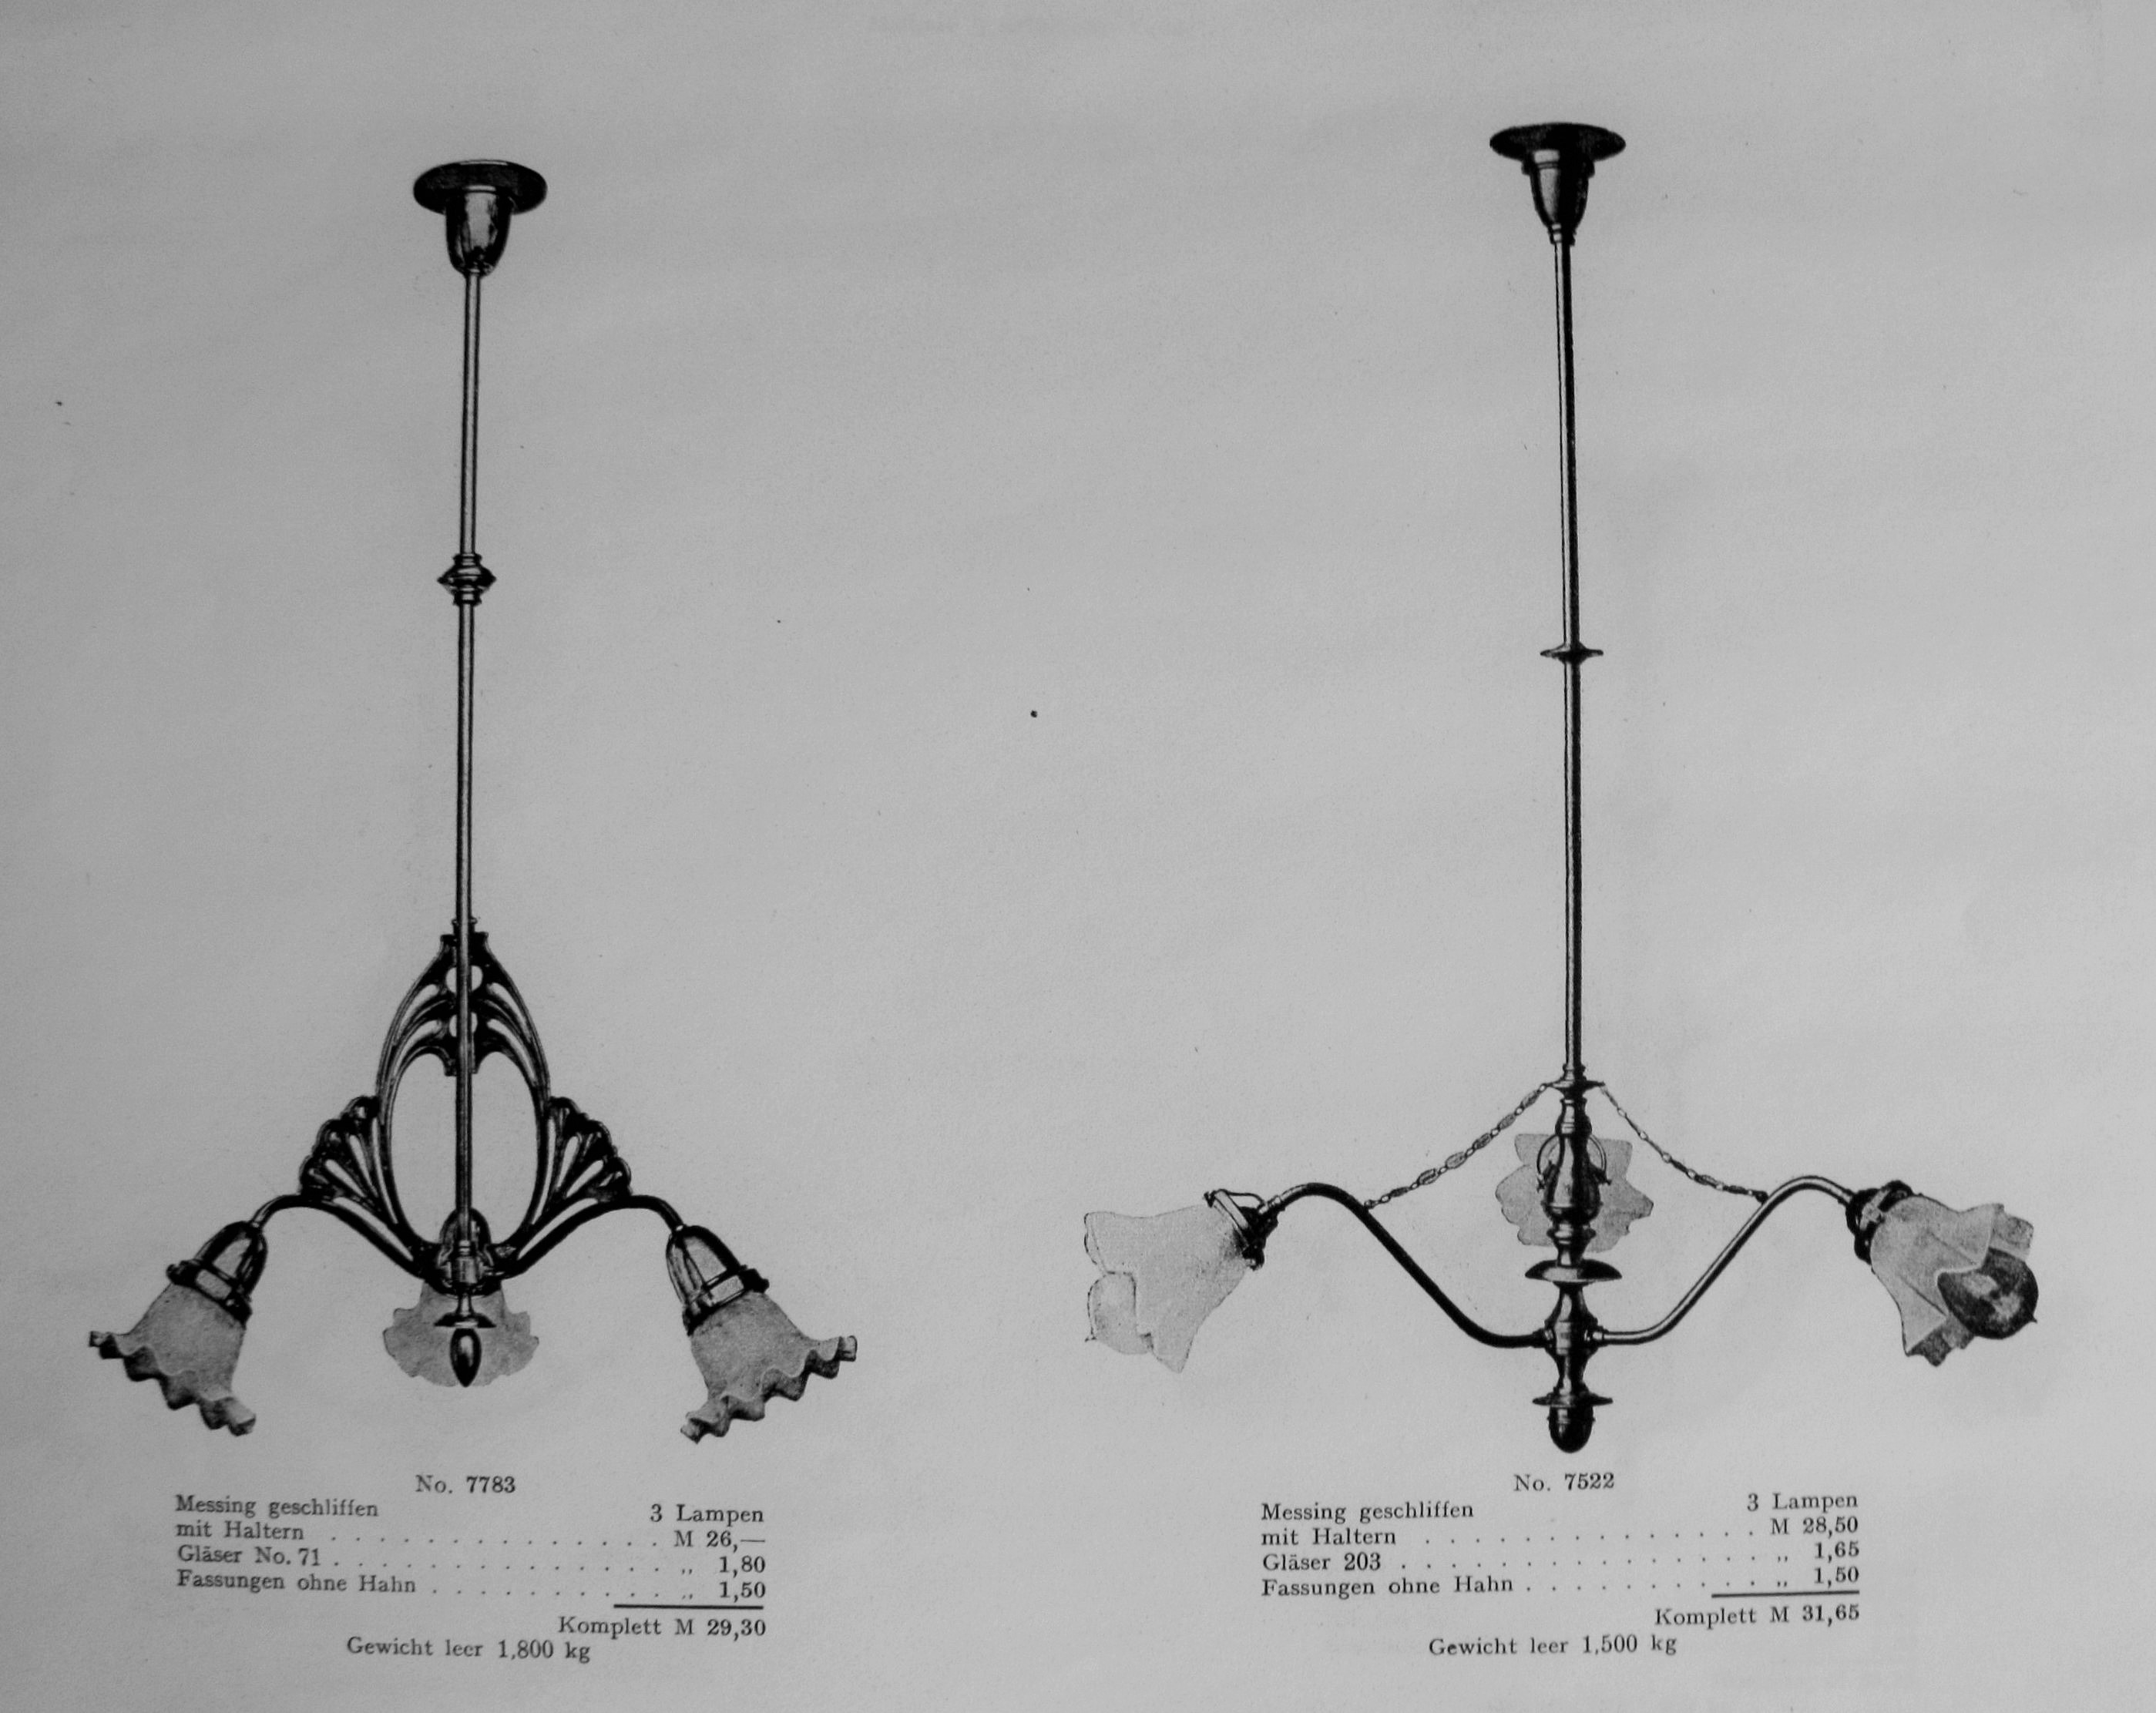 Chandeliers in catalog Beleuchtungskörper GmbH, t. 1–2, Berlin, 1910, in: Lietuvos mokslų akademijos Vrublevskių bibliotekos Retų spaudinių skyrius, A 851.